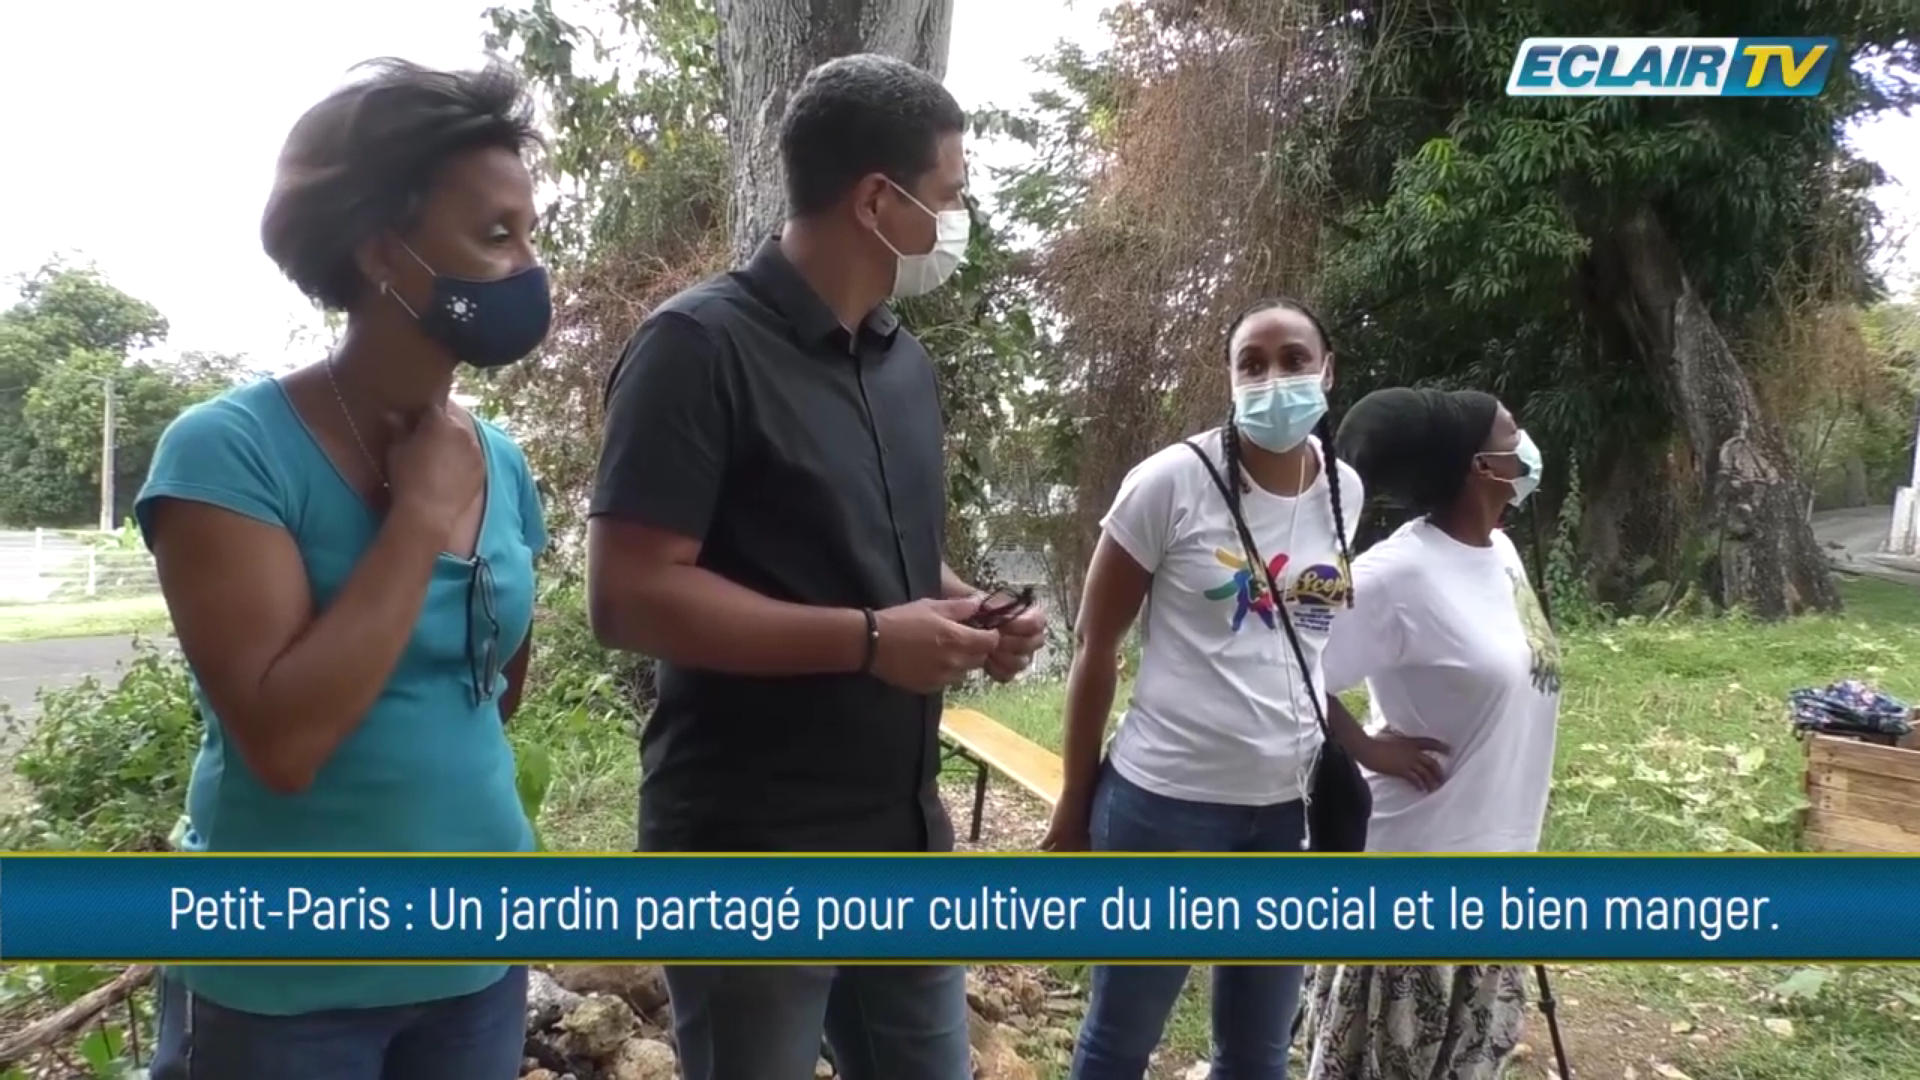 [Vidéo] Onews Guadeloupe.  A Petit Paris Basse Terre jardin potagé pour cultiver du lien social et bien manger (ECLAIR TV)